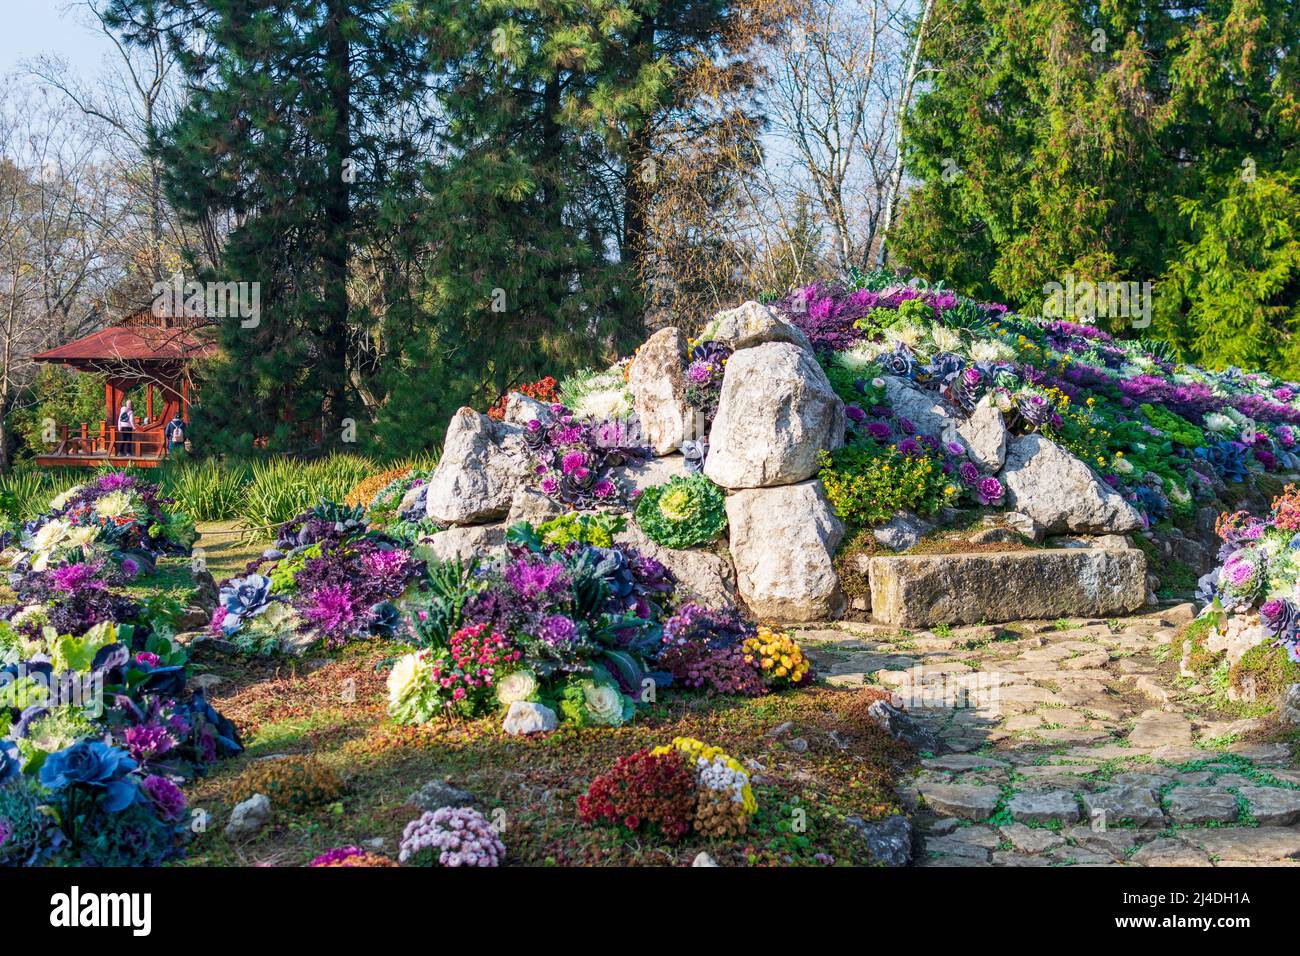 Decorative cabbages planted between rocks at Botanic Garden Iasi, Romania Stock Photo